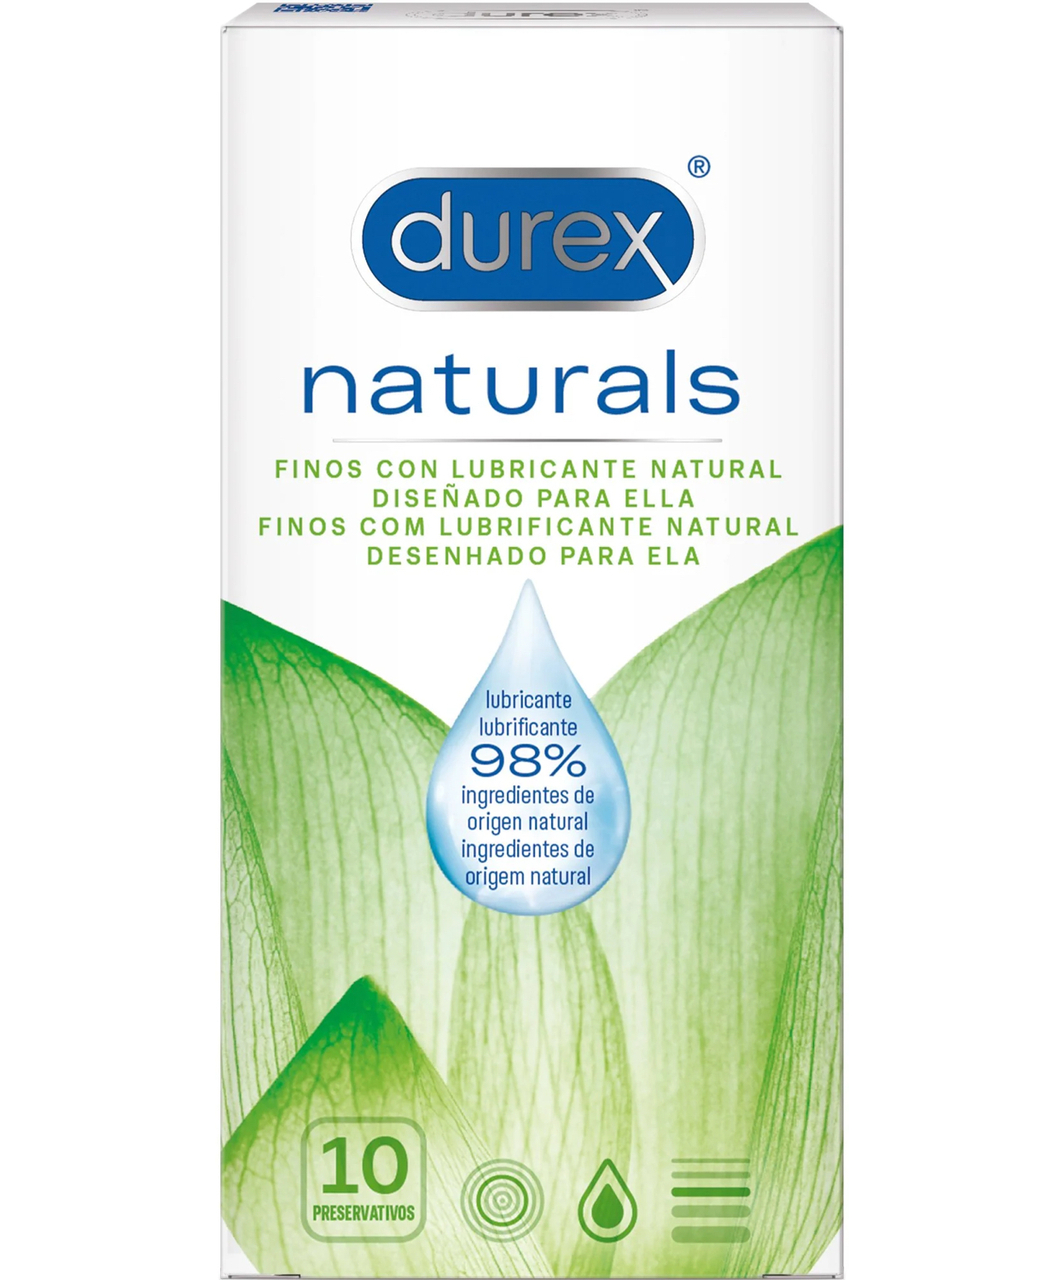 Durex Naturals презервативы (10 шт.)